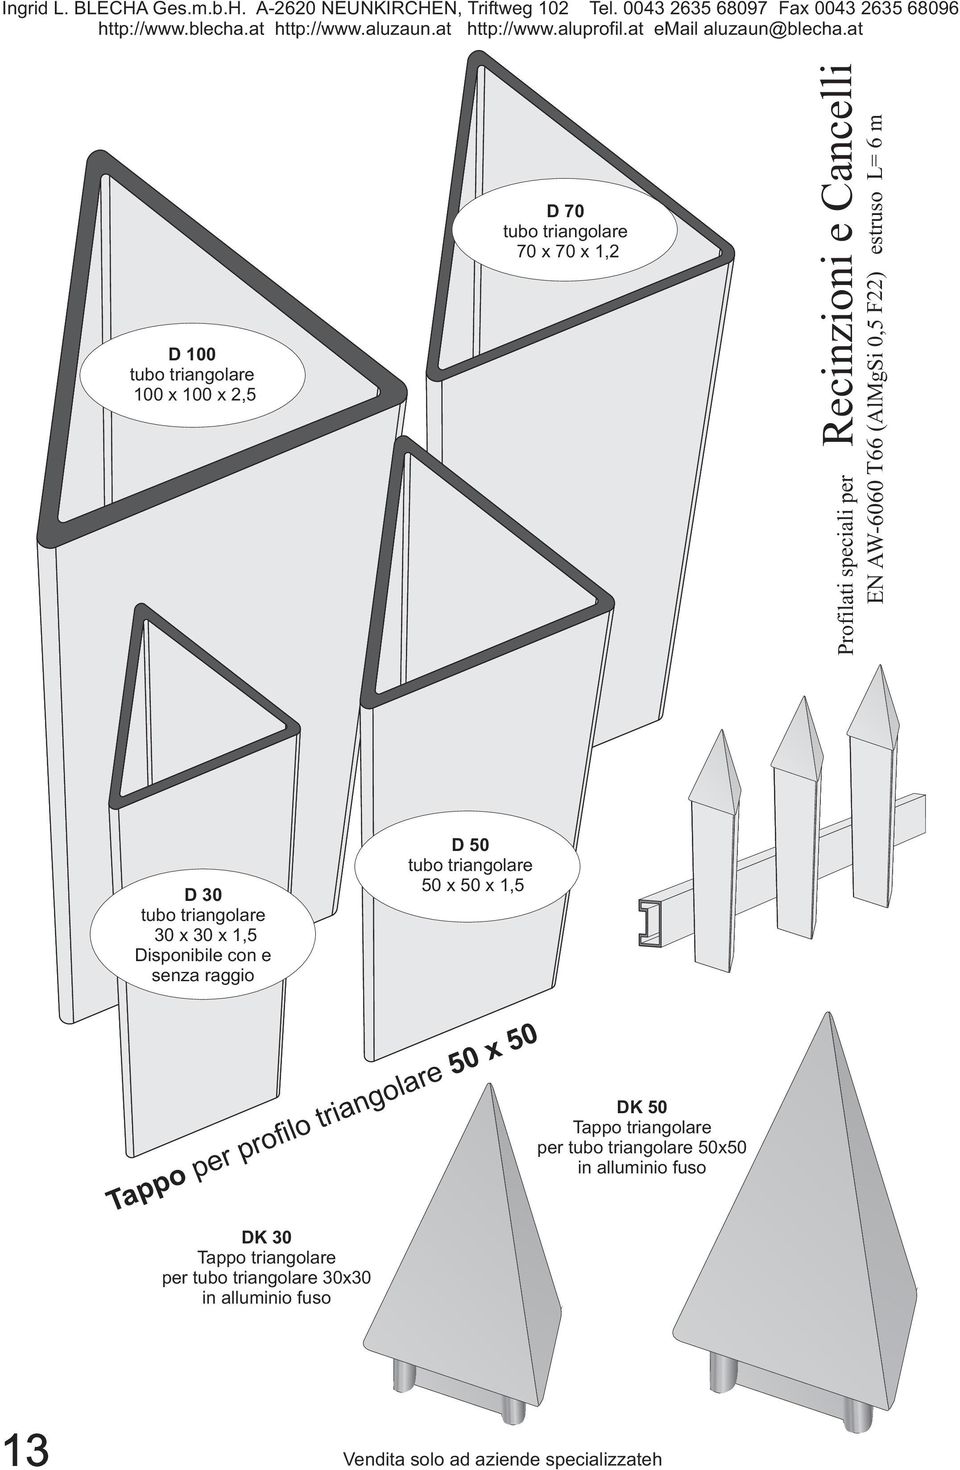 triangolare 30 x 30 x 1,5 Disponibile con e senza raggio D 50 tubo triangolare 50 x 50 x 1,5 Tappo per profilo triangolare